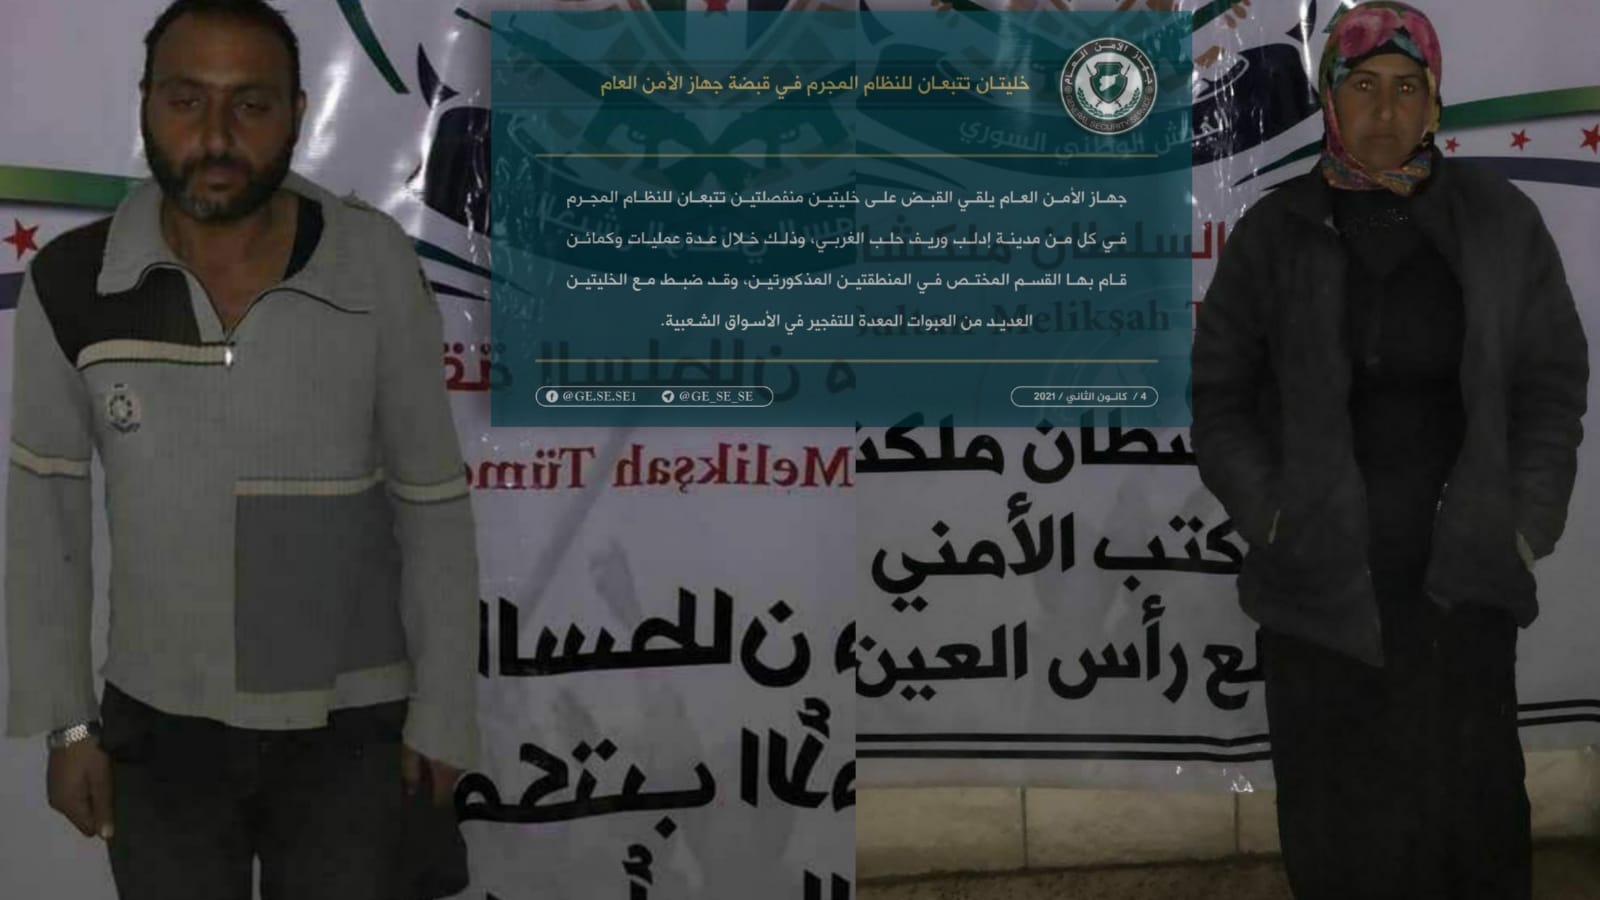 İdlib'te El Muhaberat hücresi çökertildi 5 hücre elemanı yakalandı